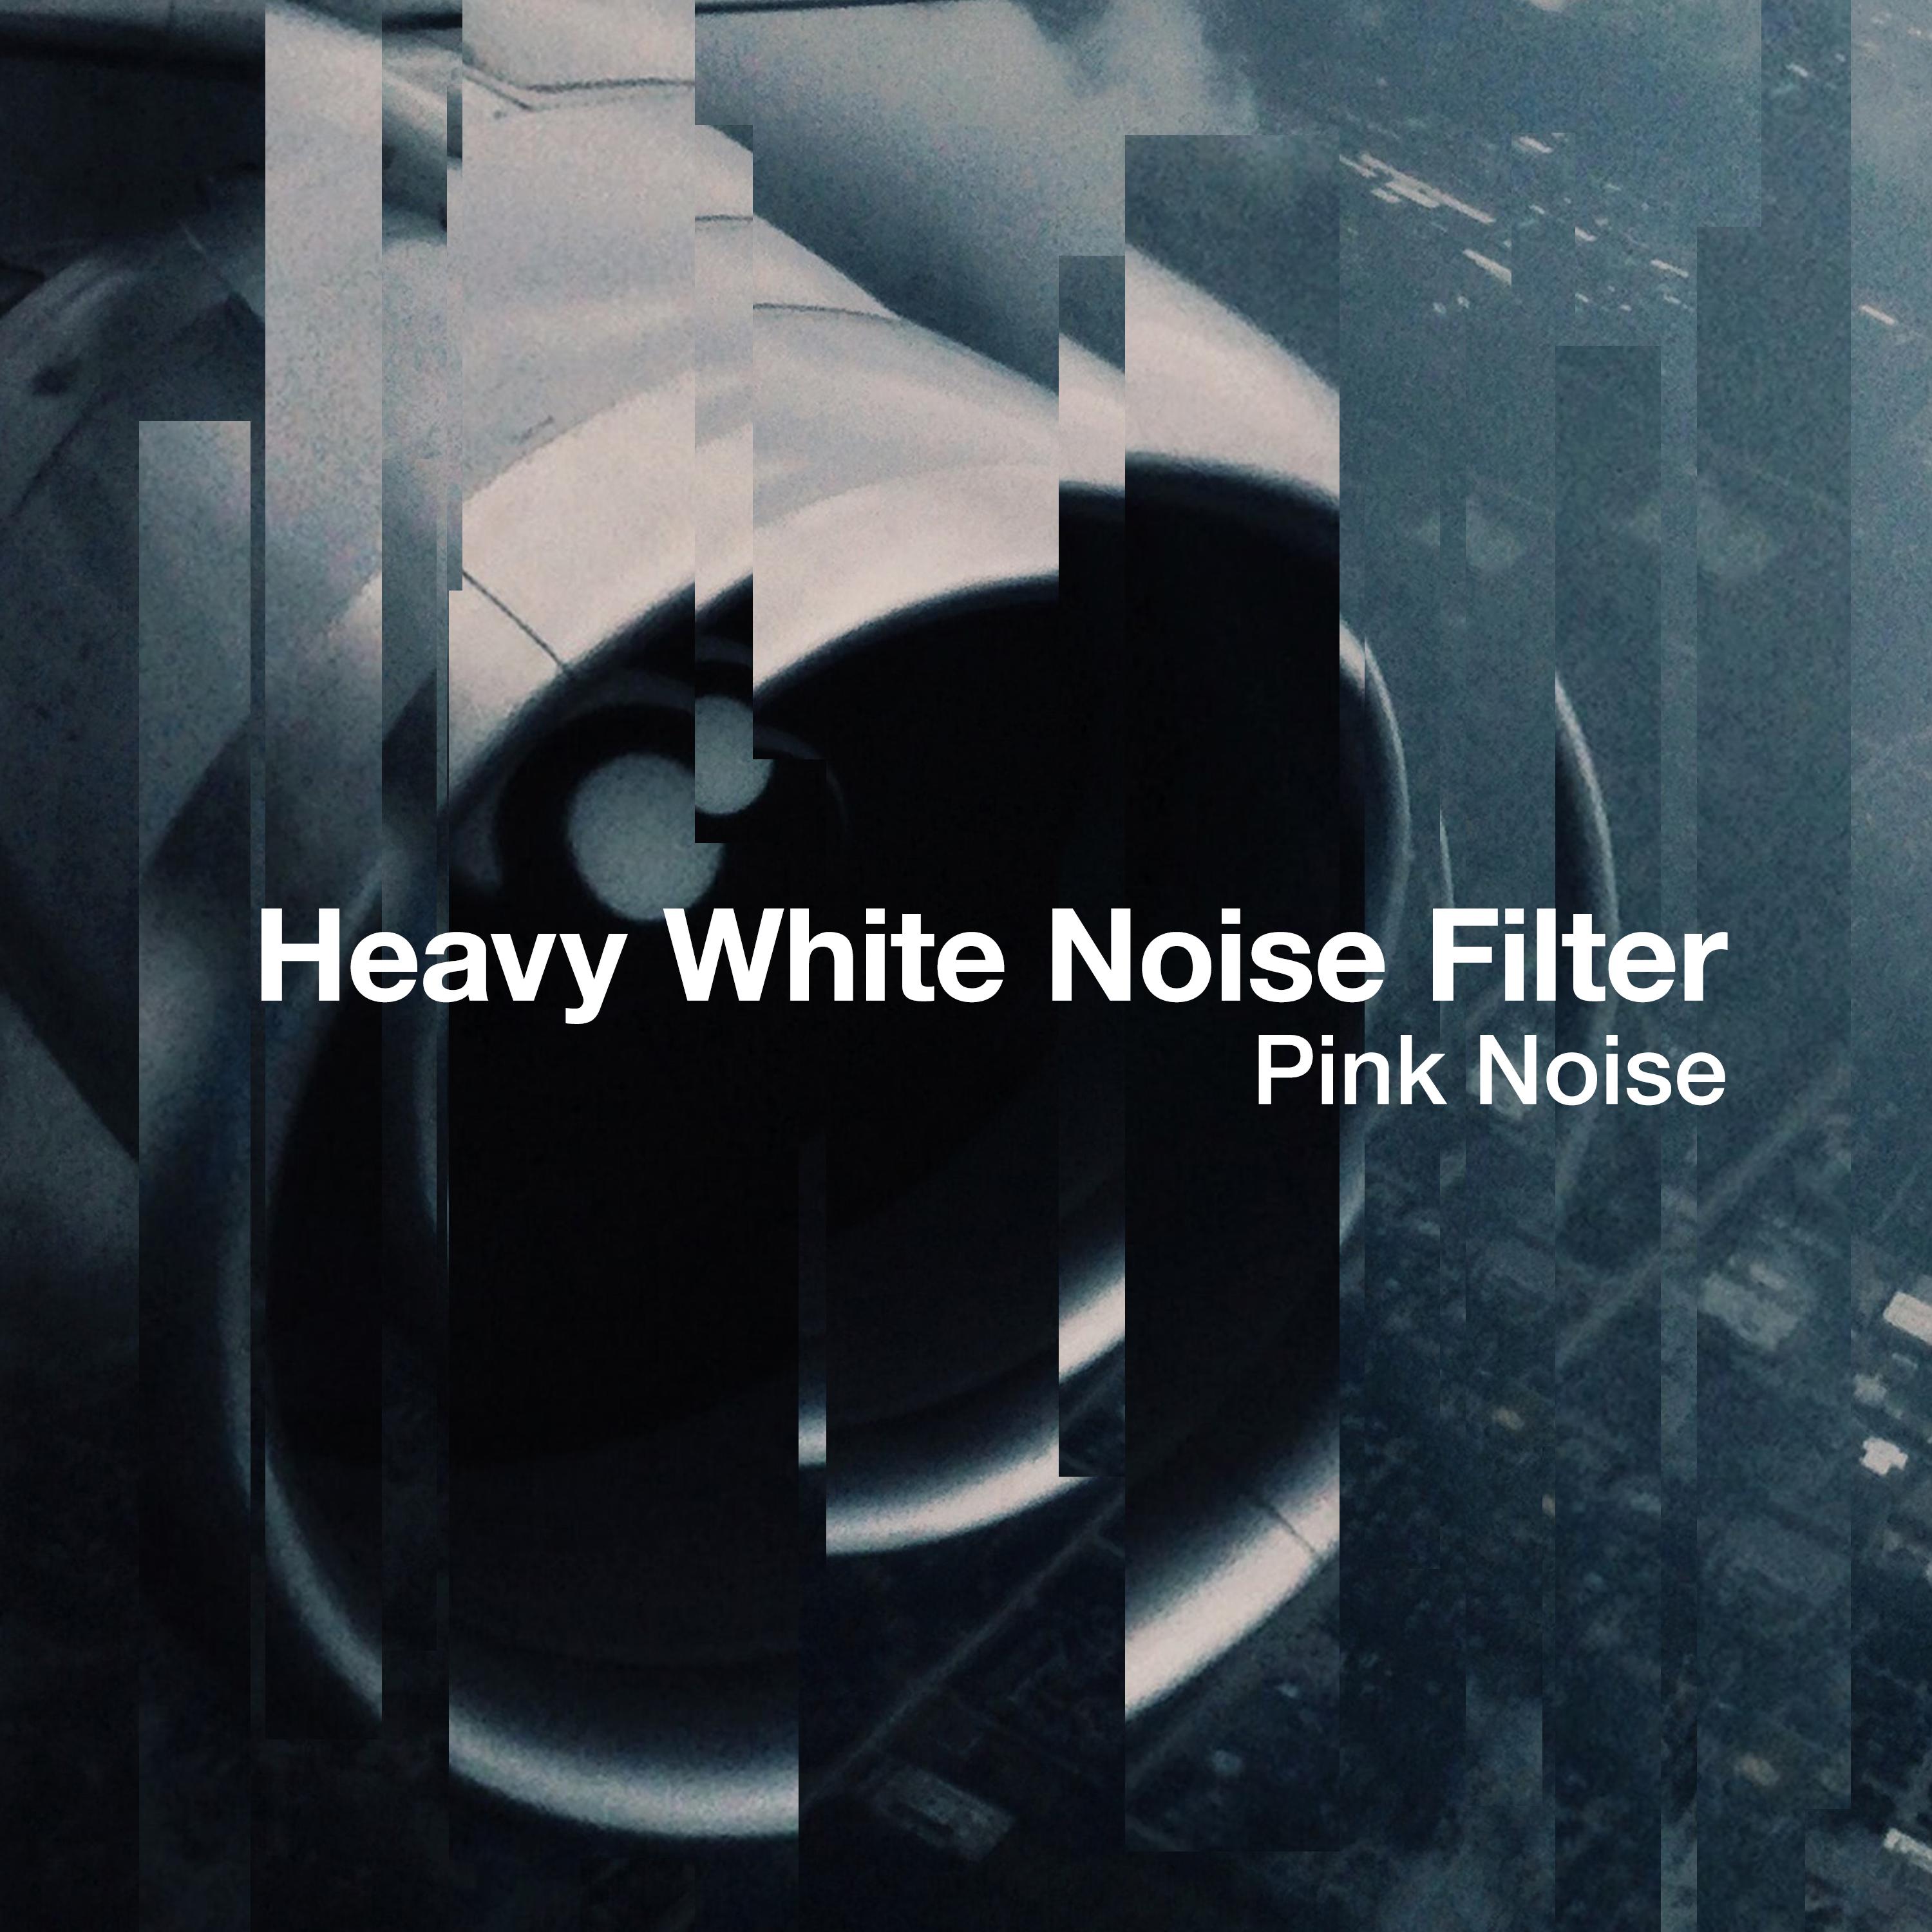 Heavy White Noise Filter